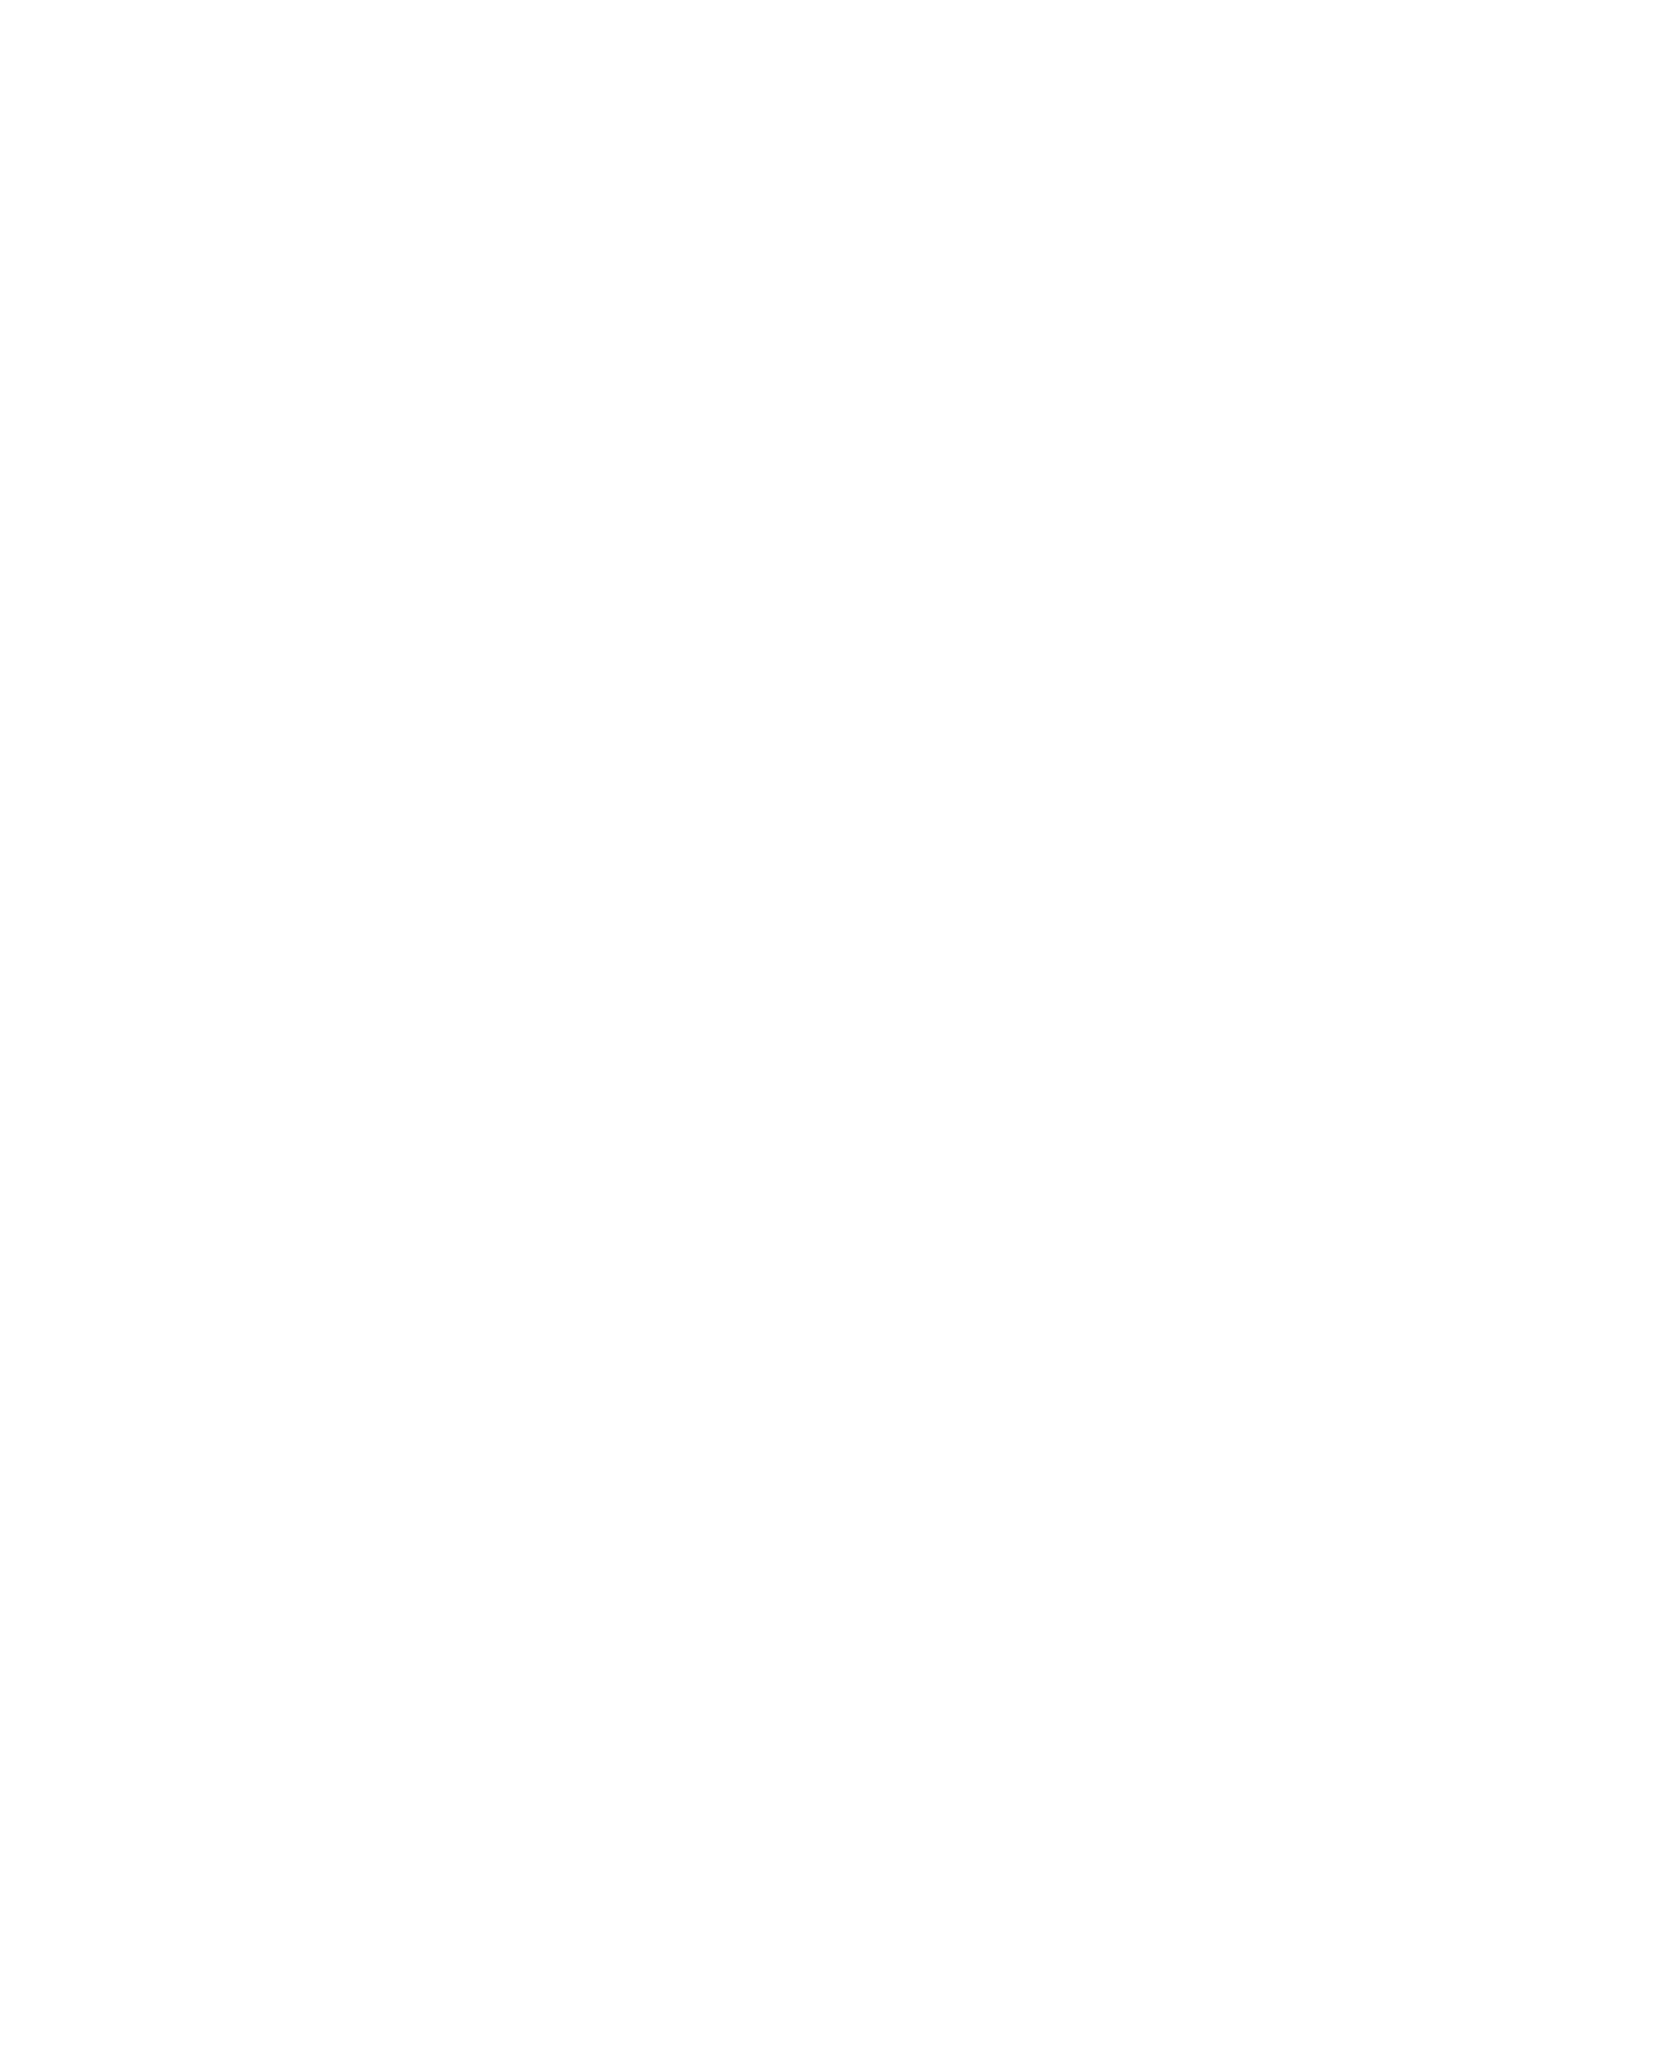 Горшочек лаванды, 42Х52 см. Холст, акрил, в багете. Мальдивы, 2020 A.N. 